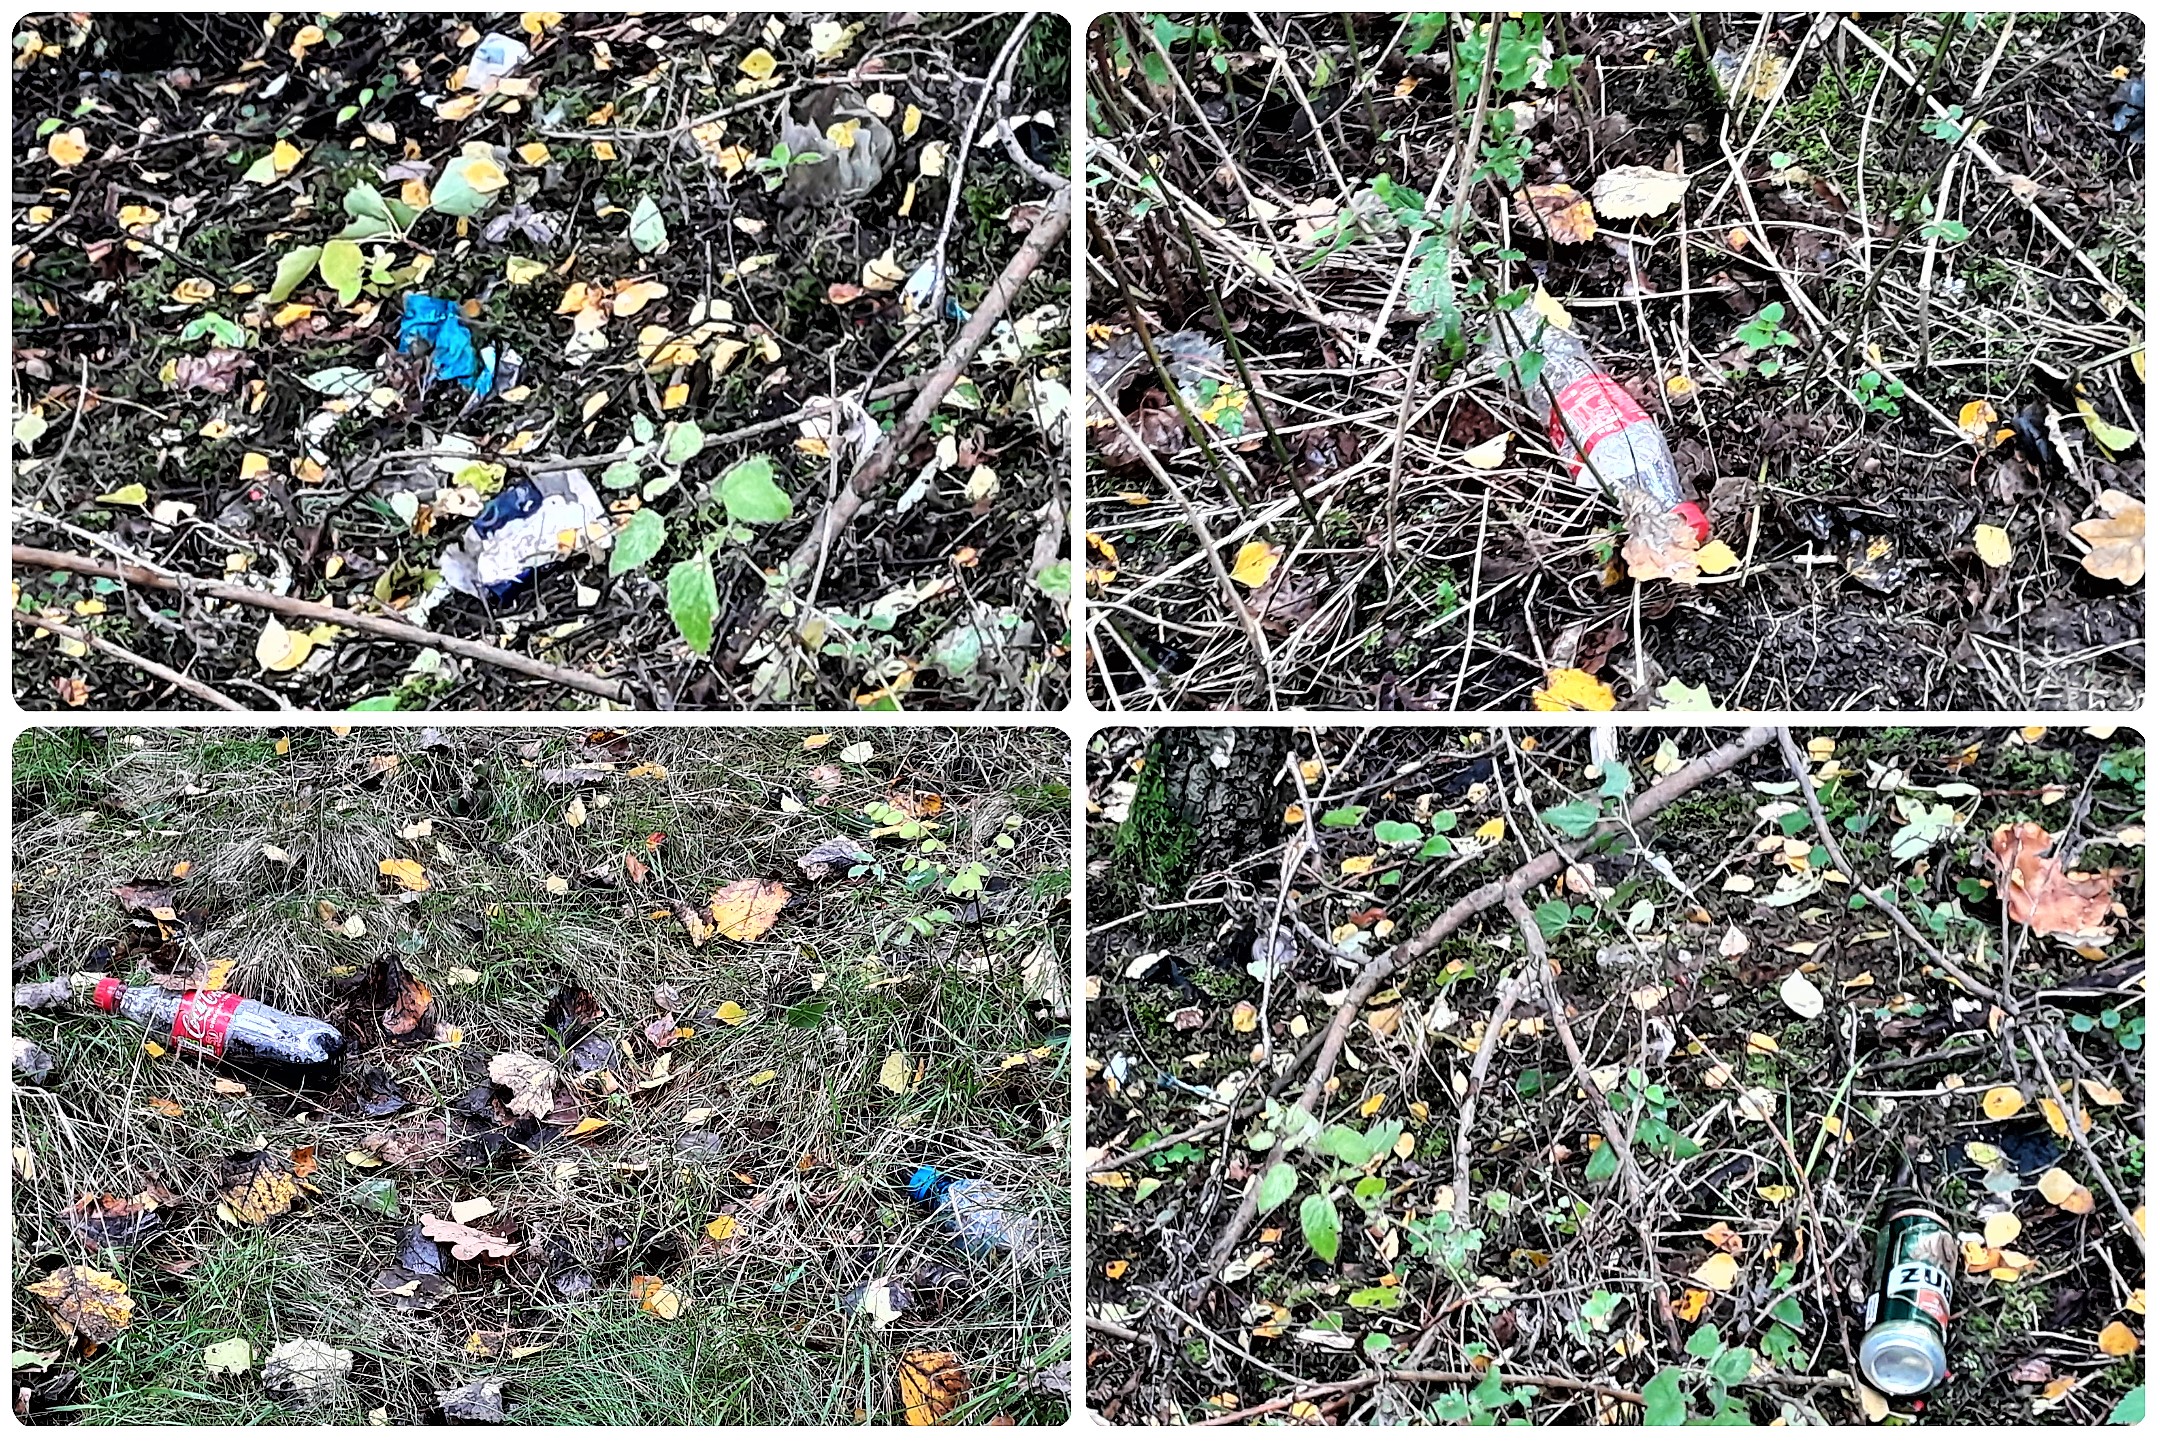 Takich odpadów w lesie jest mnóstwo. Nasilenie widoczne jest zwłaszcza jesienią.